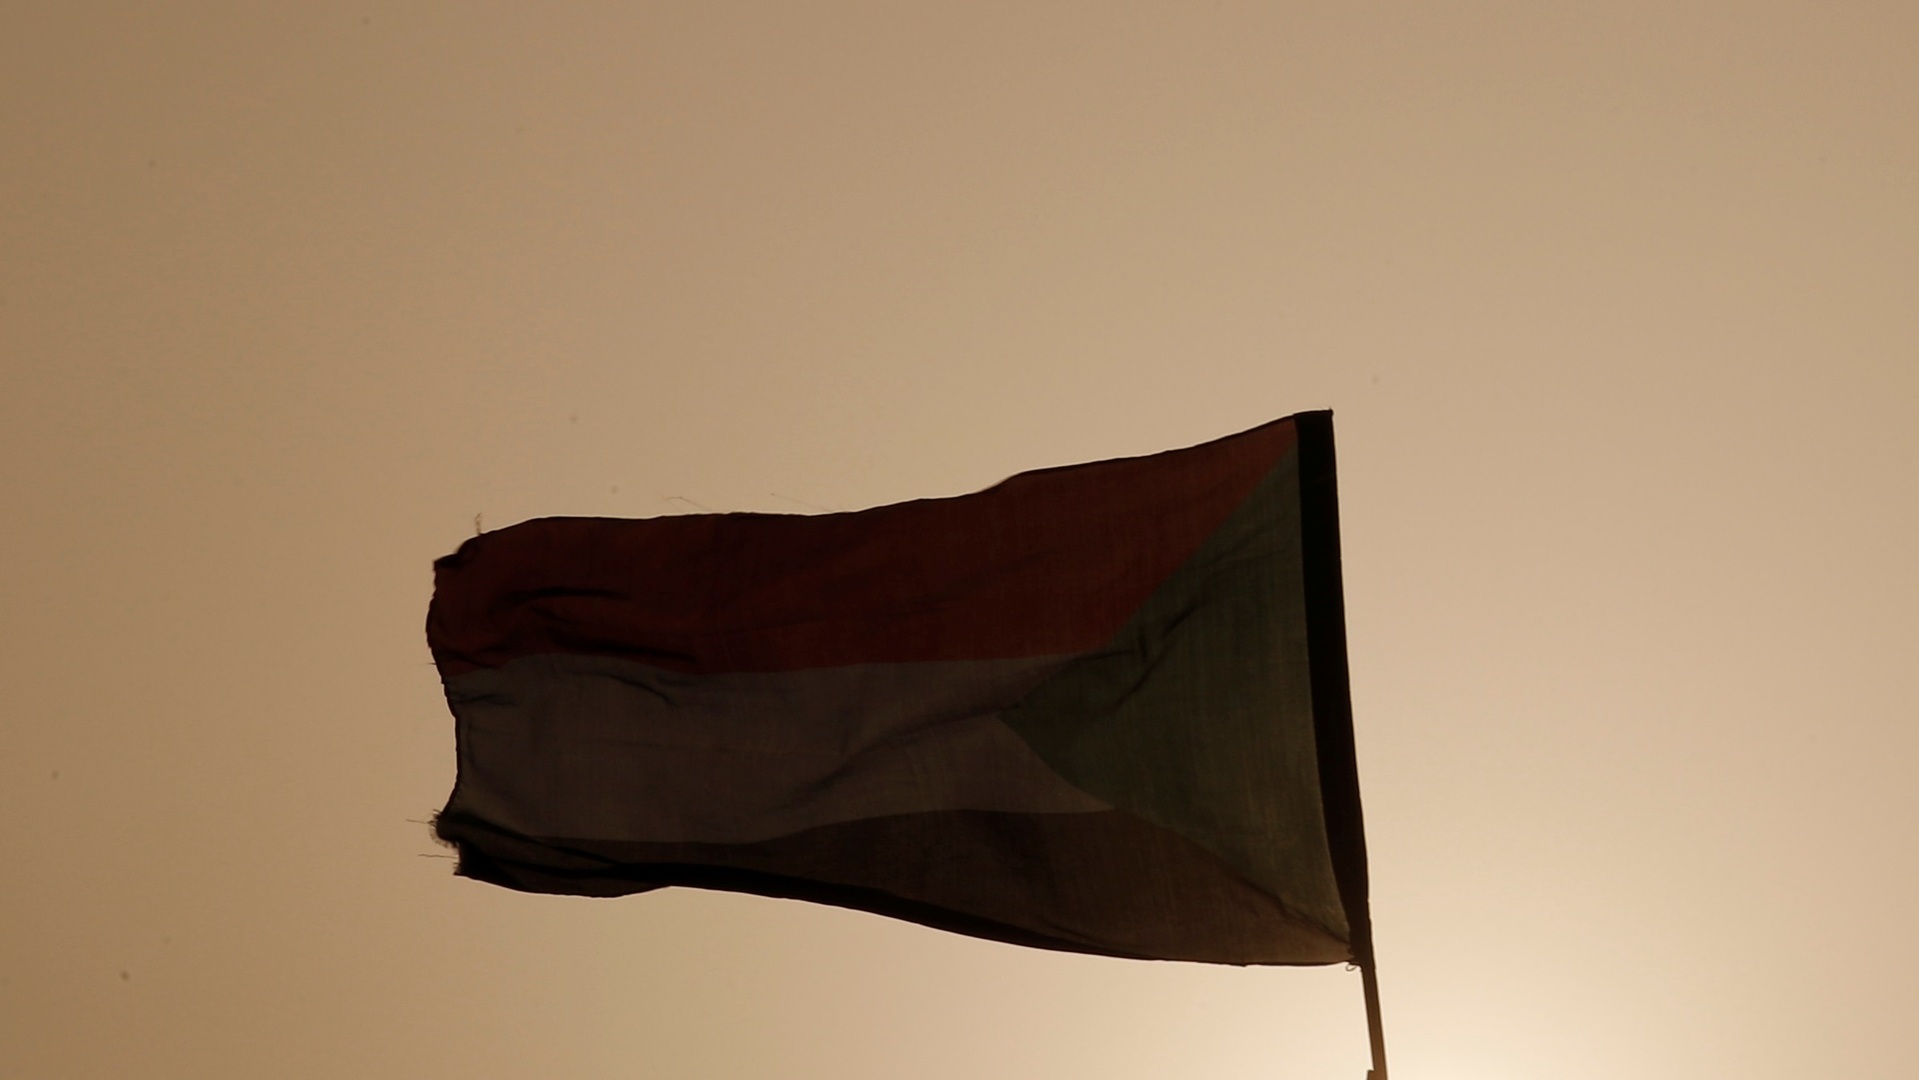 السودان يقبل وساطة الإمارات في النزاع مع إثيوبيا بشأن الحدود وسد النهضة